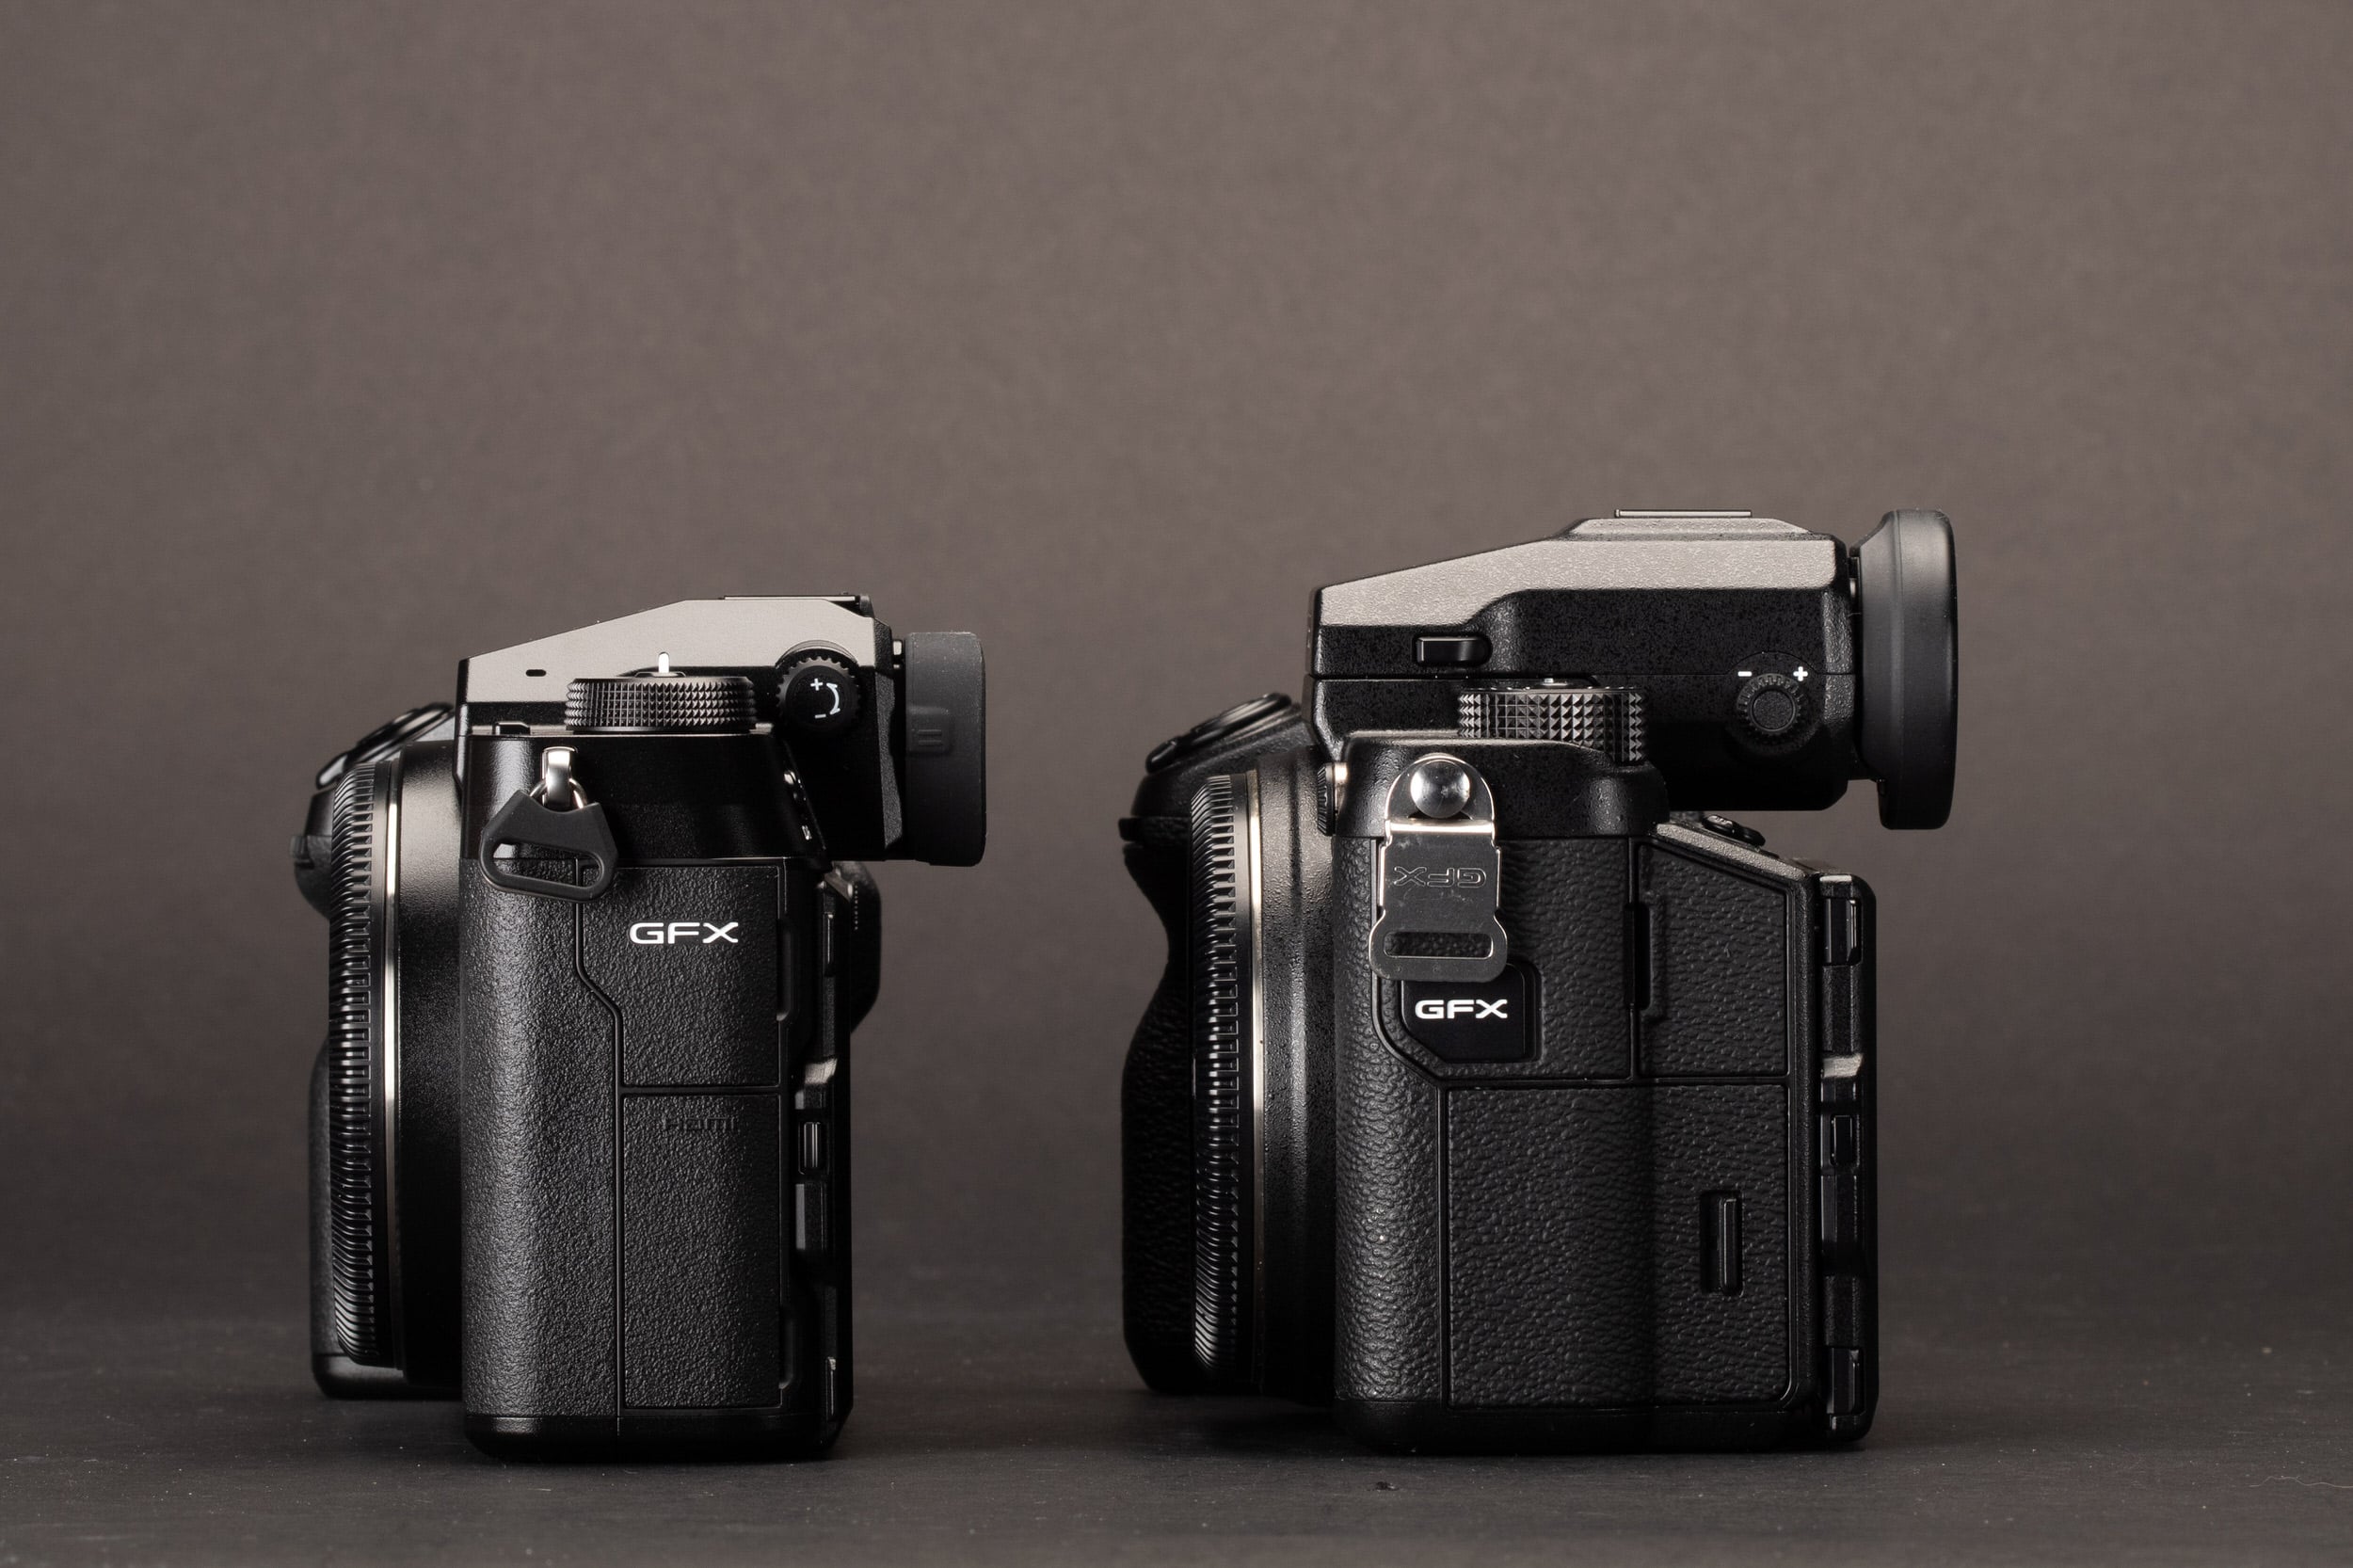 Fujifilm GFX 100S ra mắt, chiếc máy ảnh medium format nhưng kích thước ngang với full frame